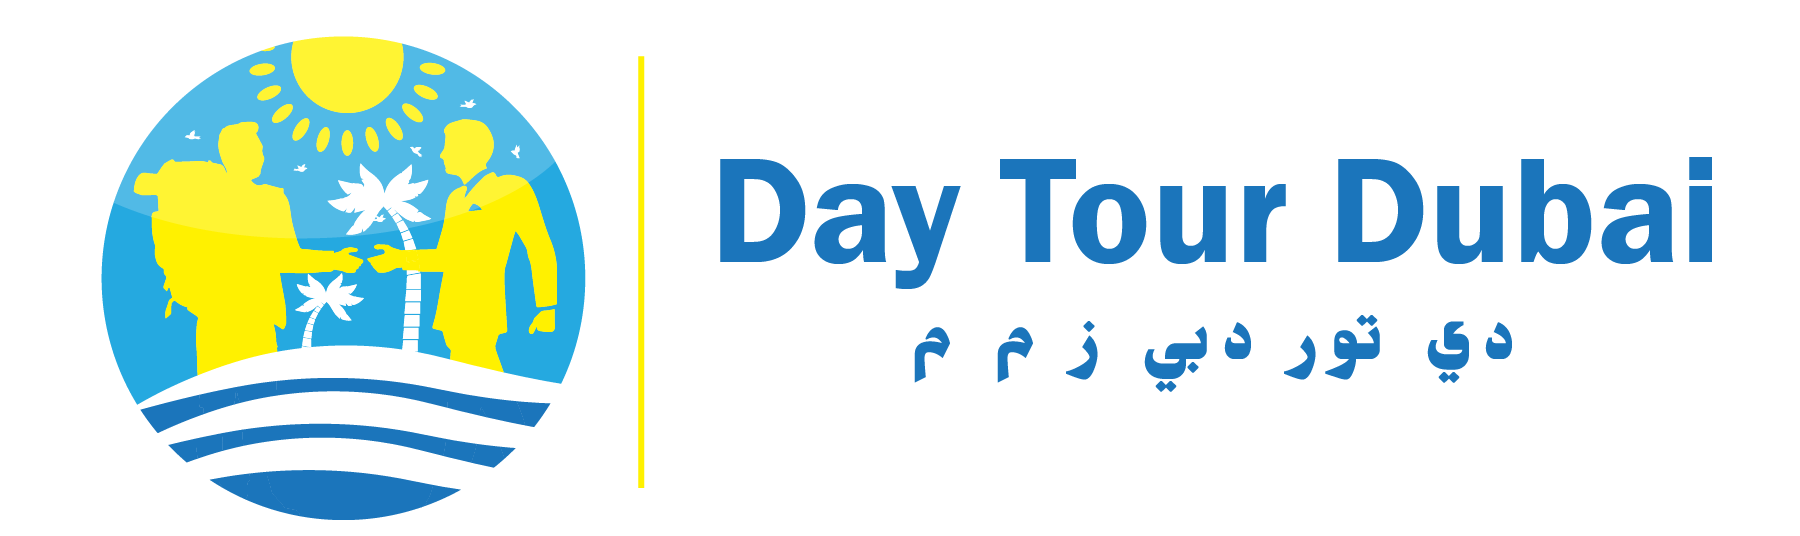 day tour of dubai